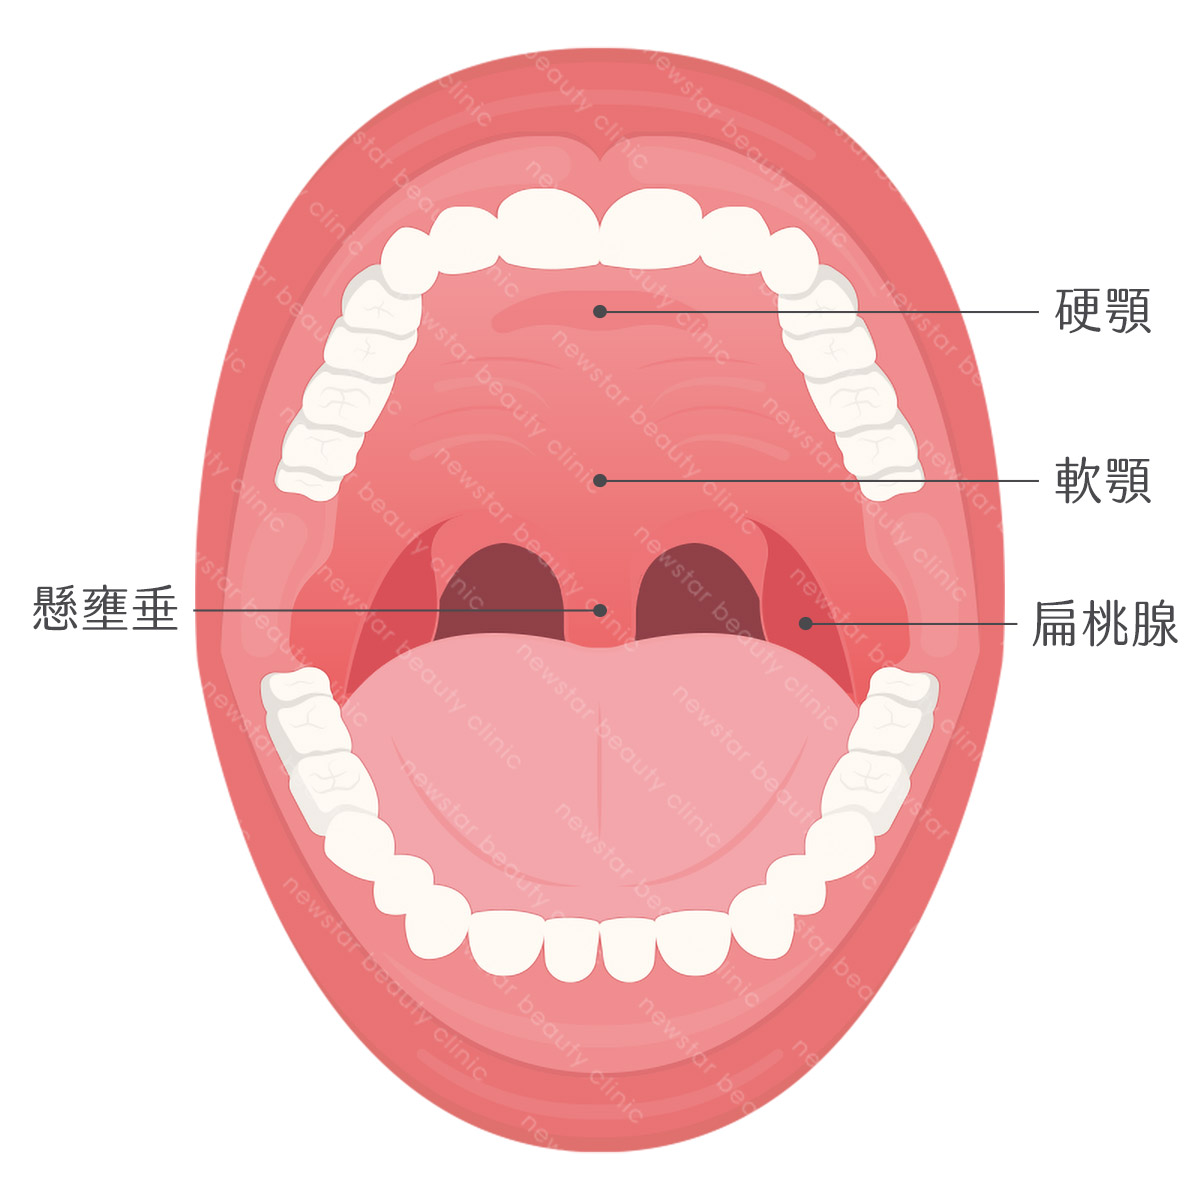 軟硬顎、扁桃腺、懸壅垂位置圖